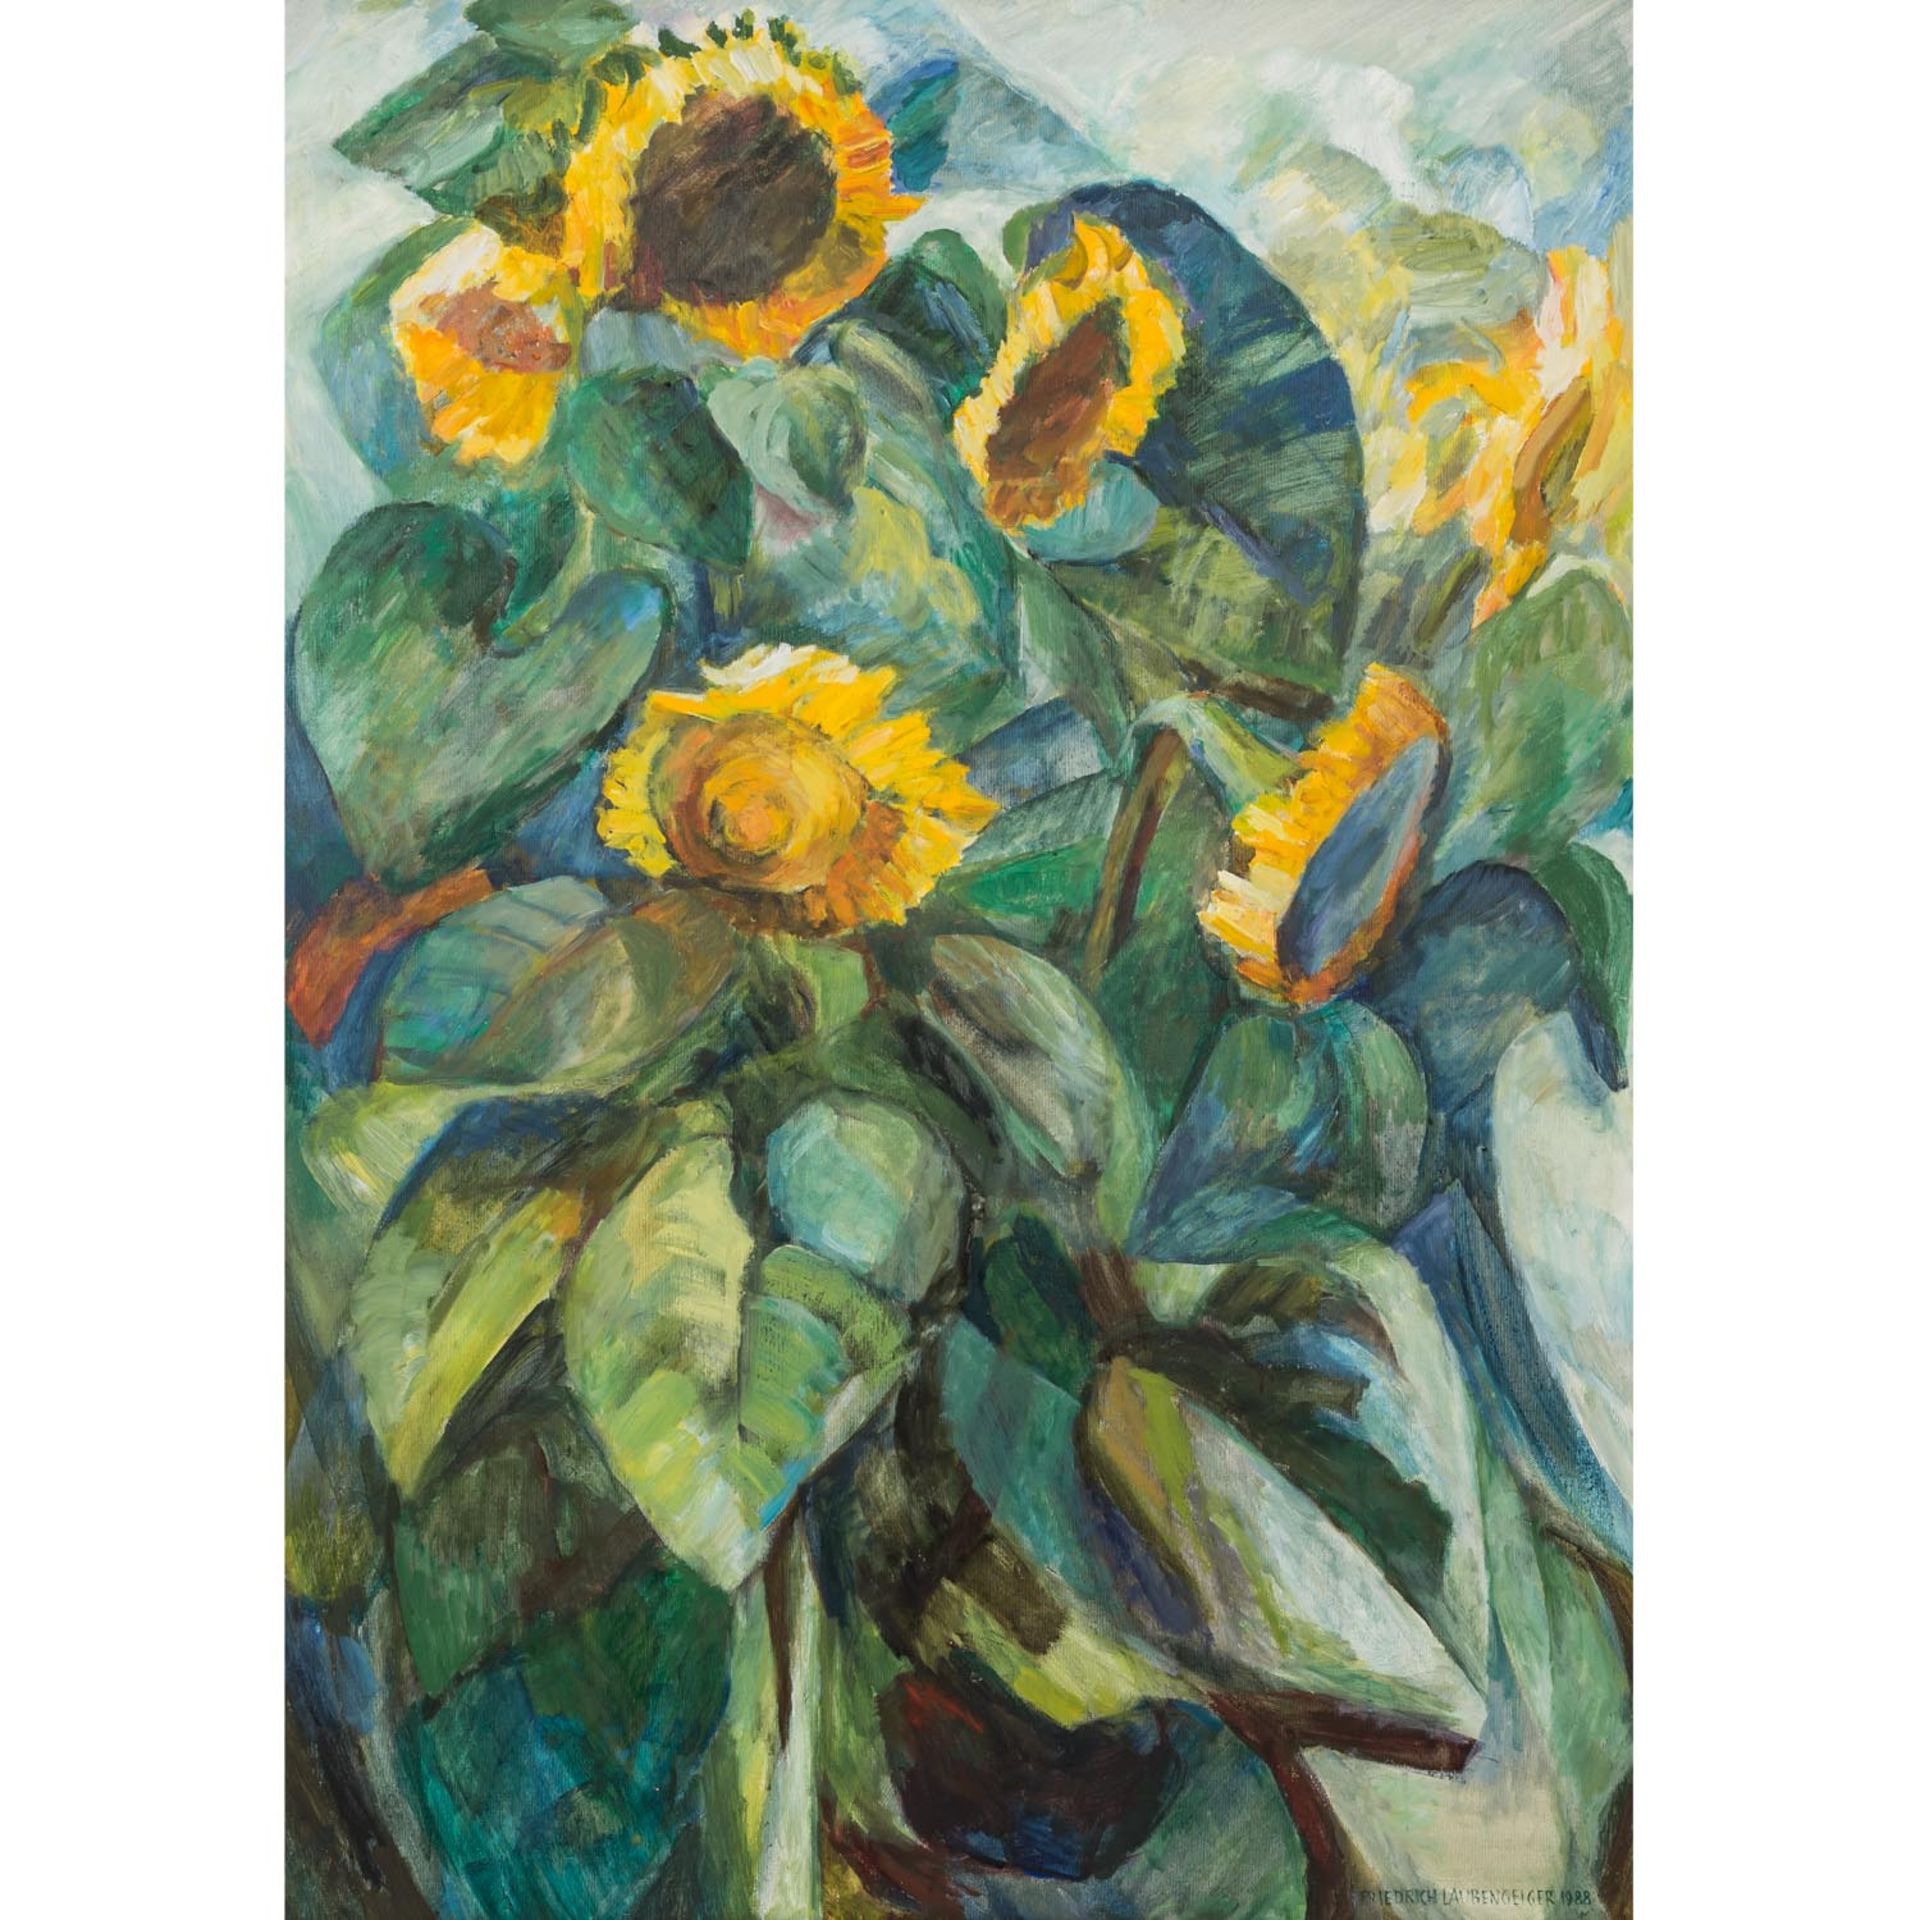 LAUBENGEIGER, FRIEDRICH (geb. 1929), "Sonnenblumen in meinem Garten",